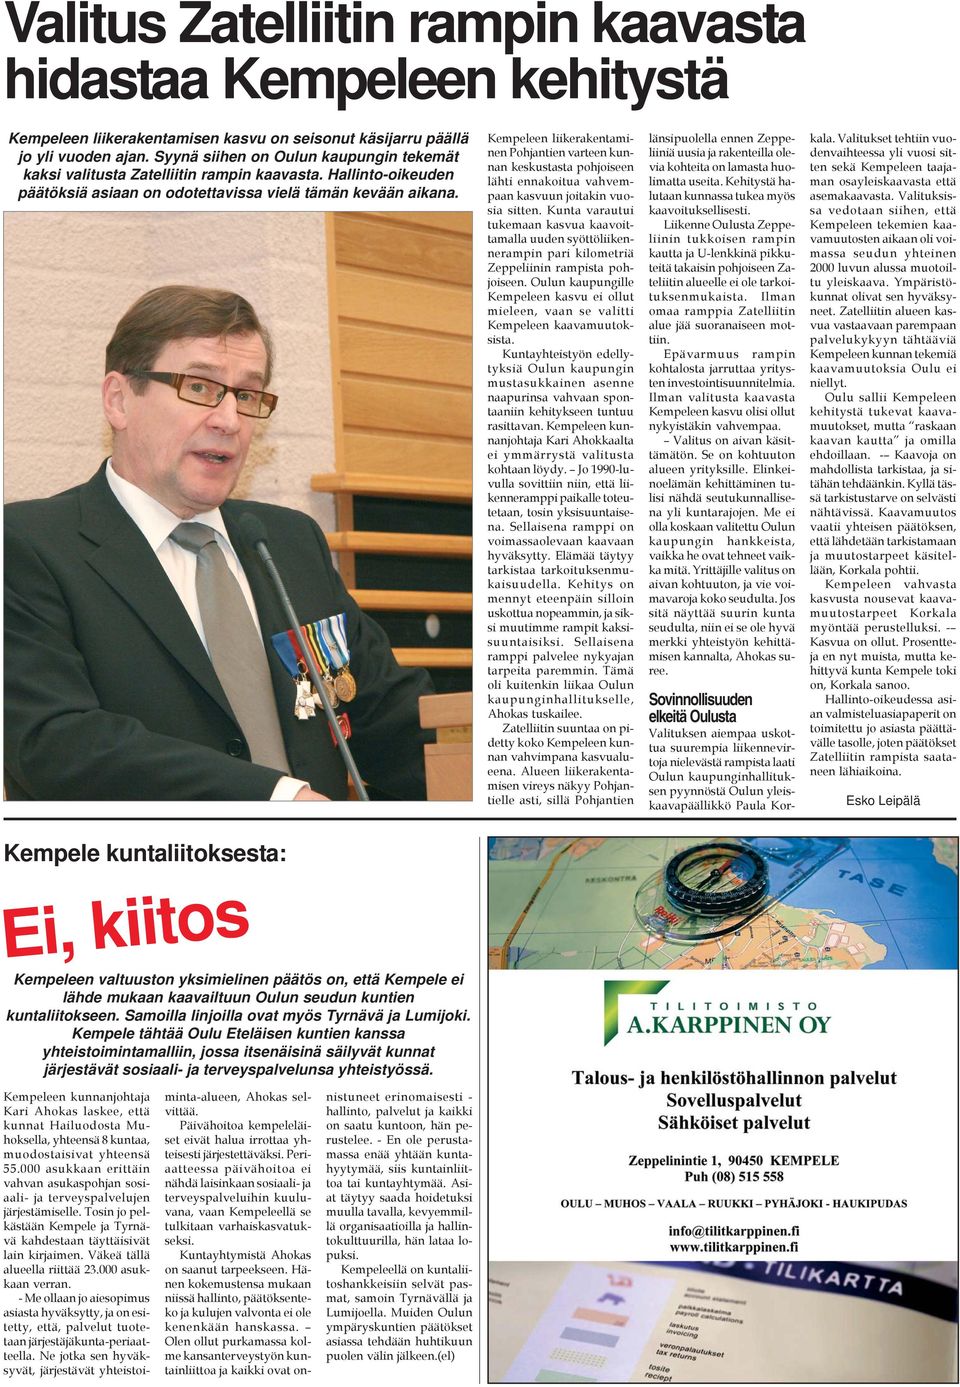 Kunnanjohtaja Kari Ahokas puhumassa Kempeleen Yrittäjien 30-vuotisjuhlassa viime marraskuussa.